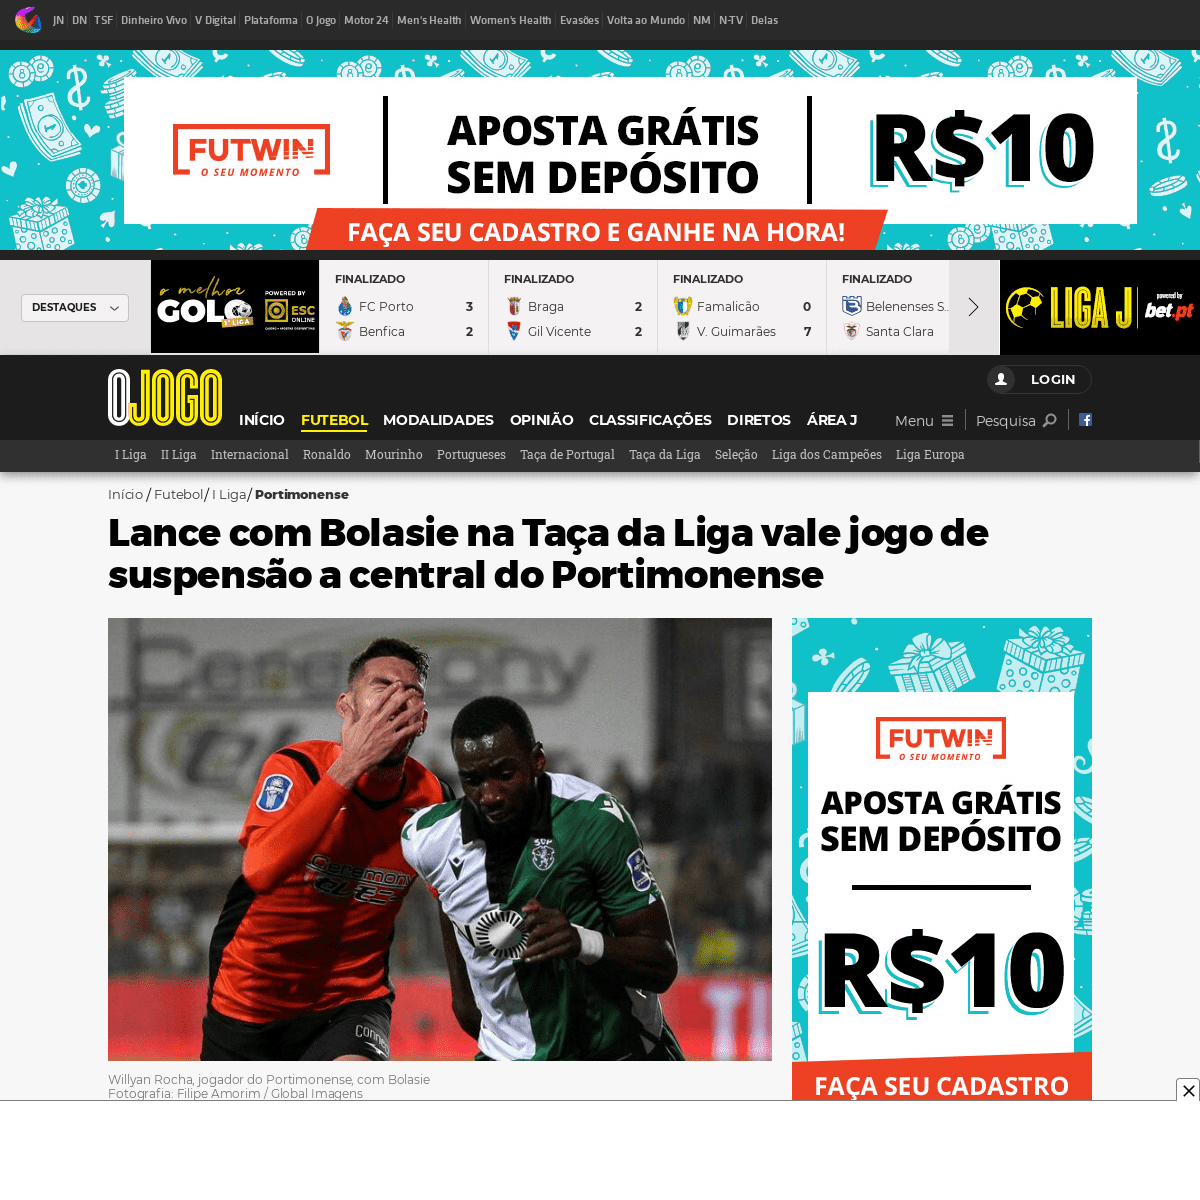 A complete backup of www.ojogo.pt/futebol/1a-liga/portimonense/noticias/lance-com-bolasie-na-taca-da-liga-vale-um-jogo-de-suspen